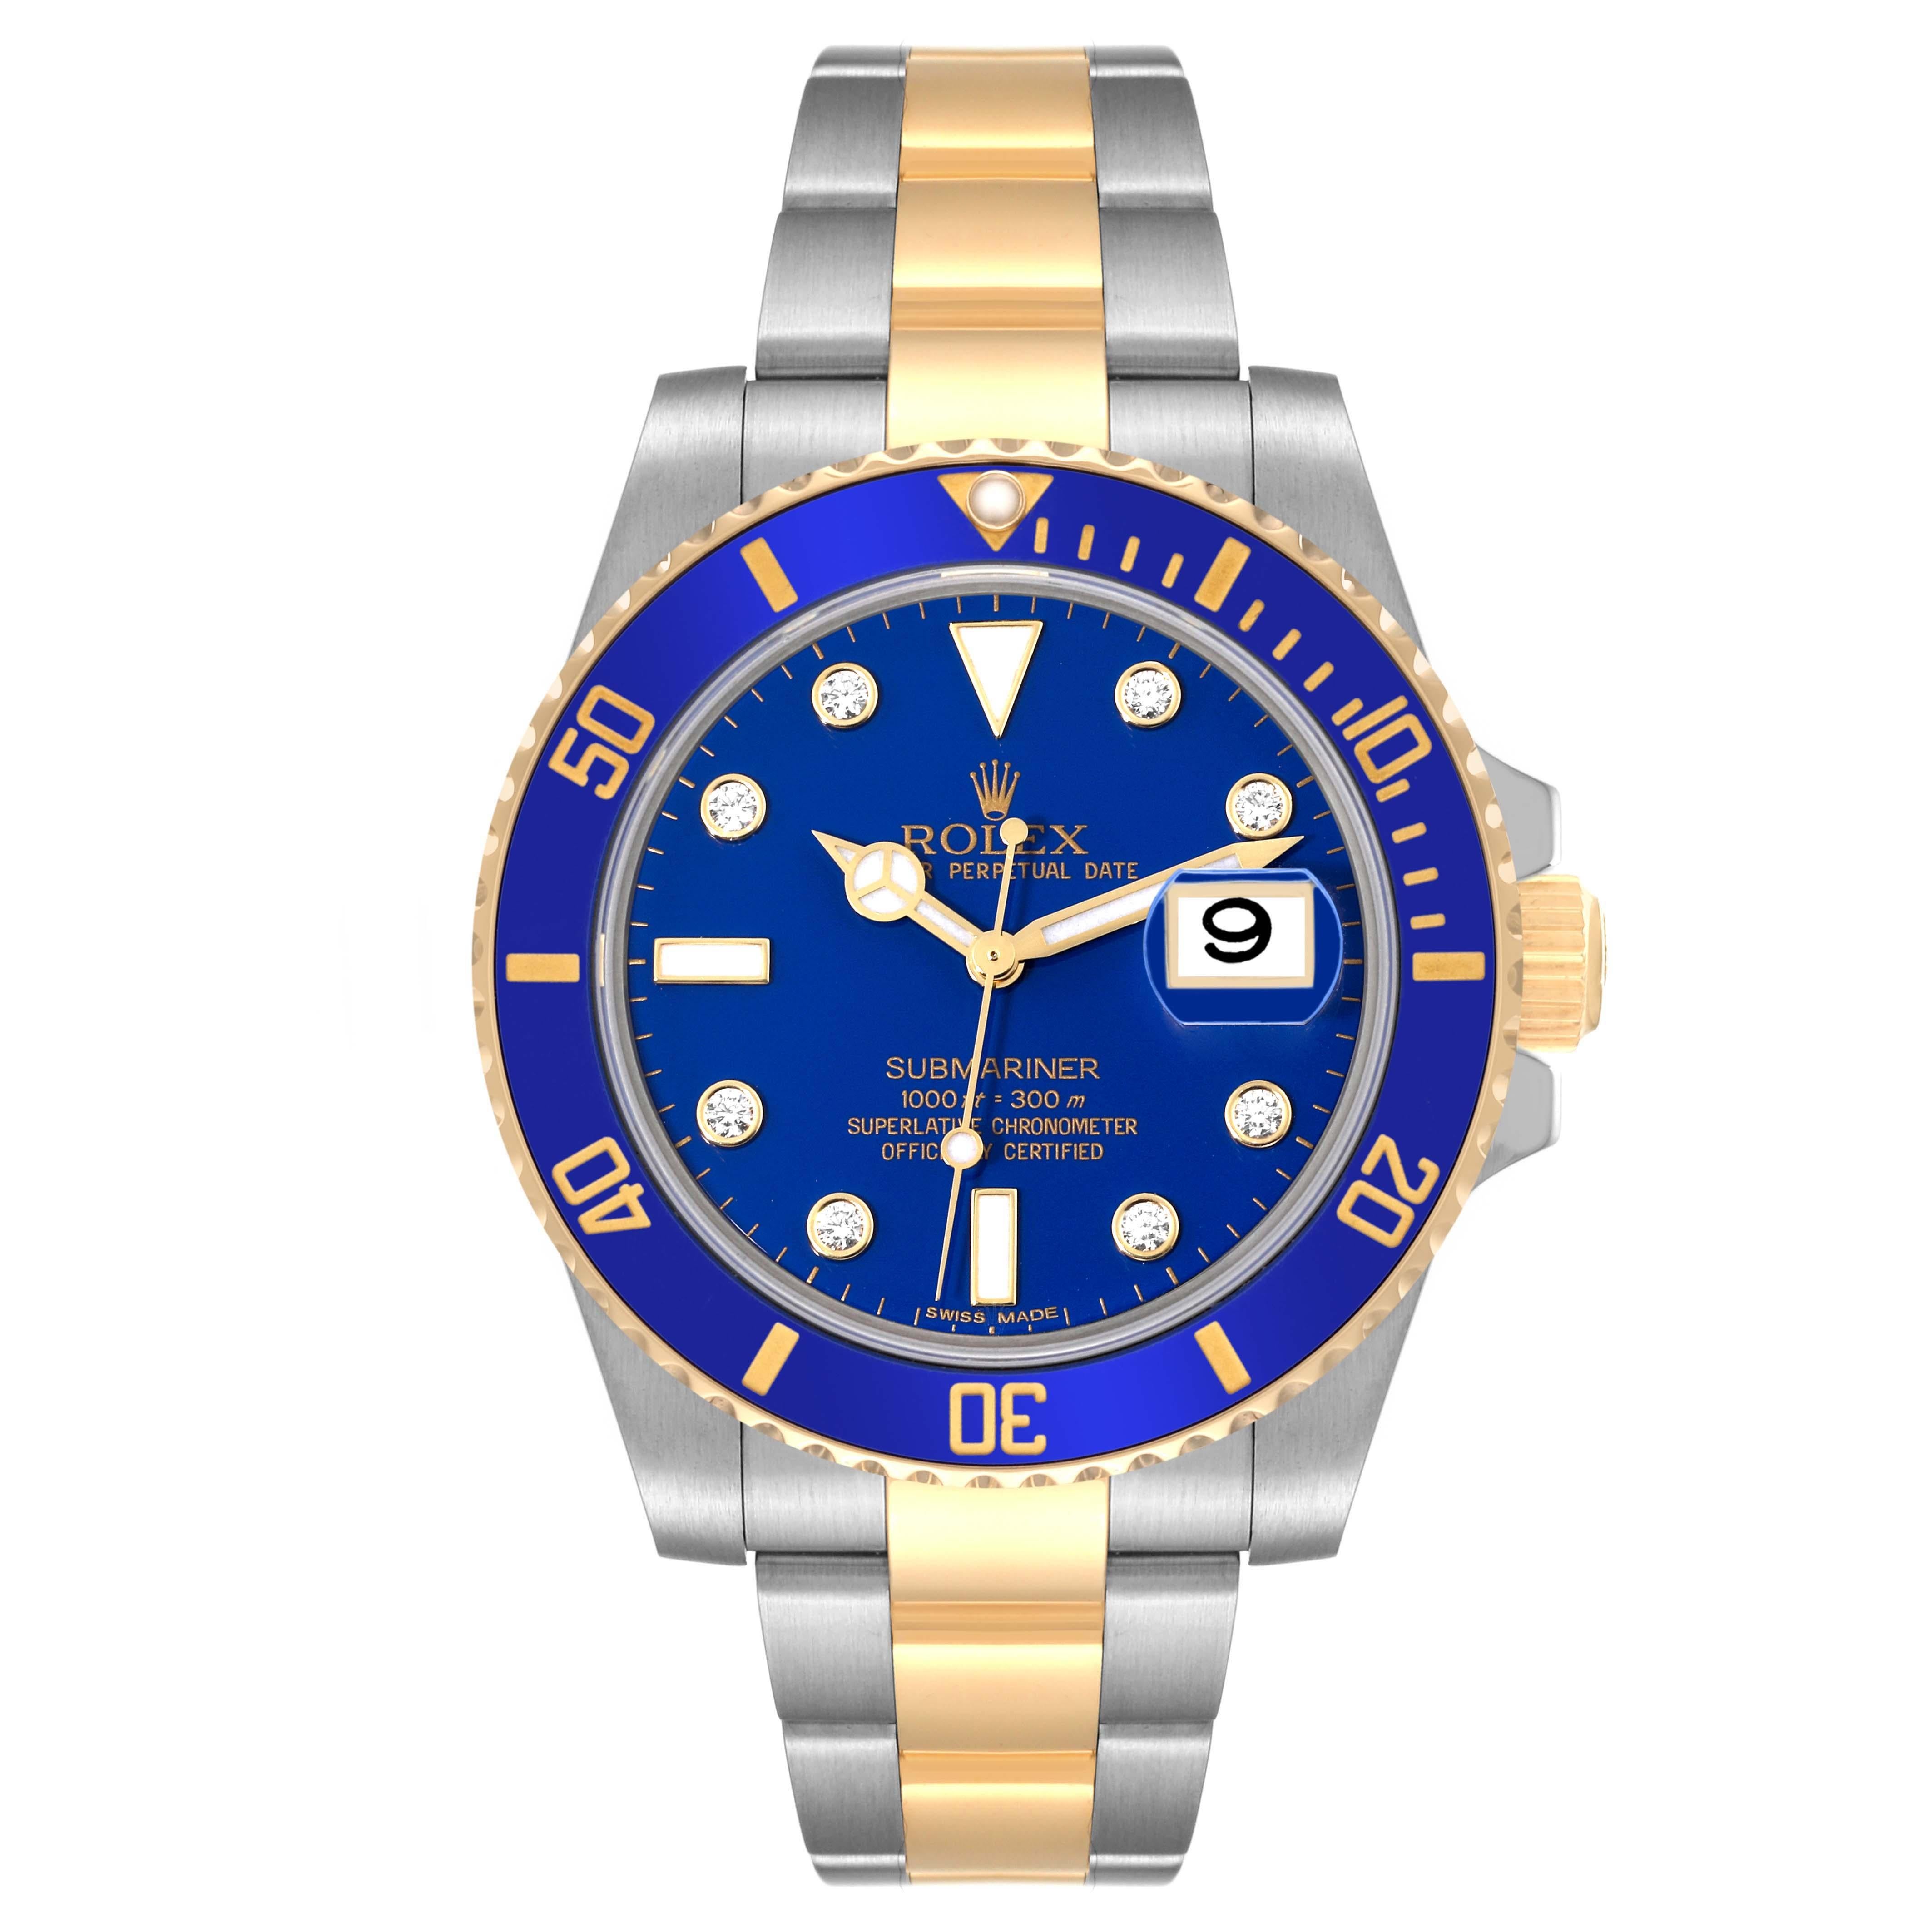 Rolex Submariner Stahl Gelbgold Blau Diamant Zifferblatt Herrenuhr 116613. Offiziell zertifiziertes Chronometerwerk mit automatischem Aufzug. Gehäuse aus Edelstahl und 18 Karat Gelbgold mit einem Durchmesser von 40,0 mm. Rolex Logo auf einer Krone.